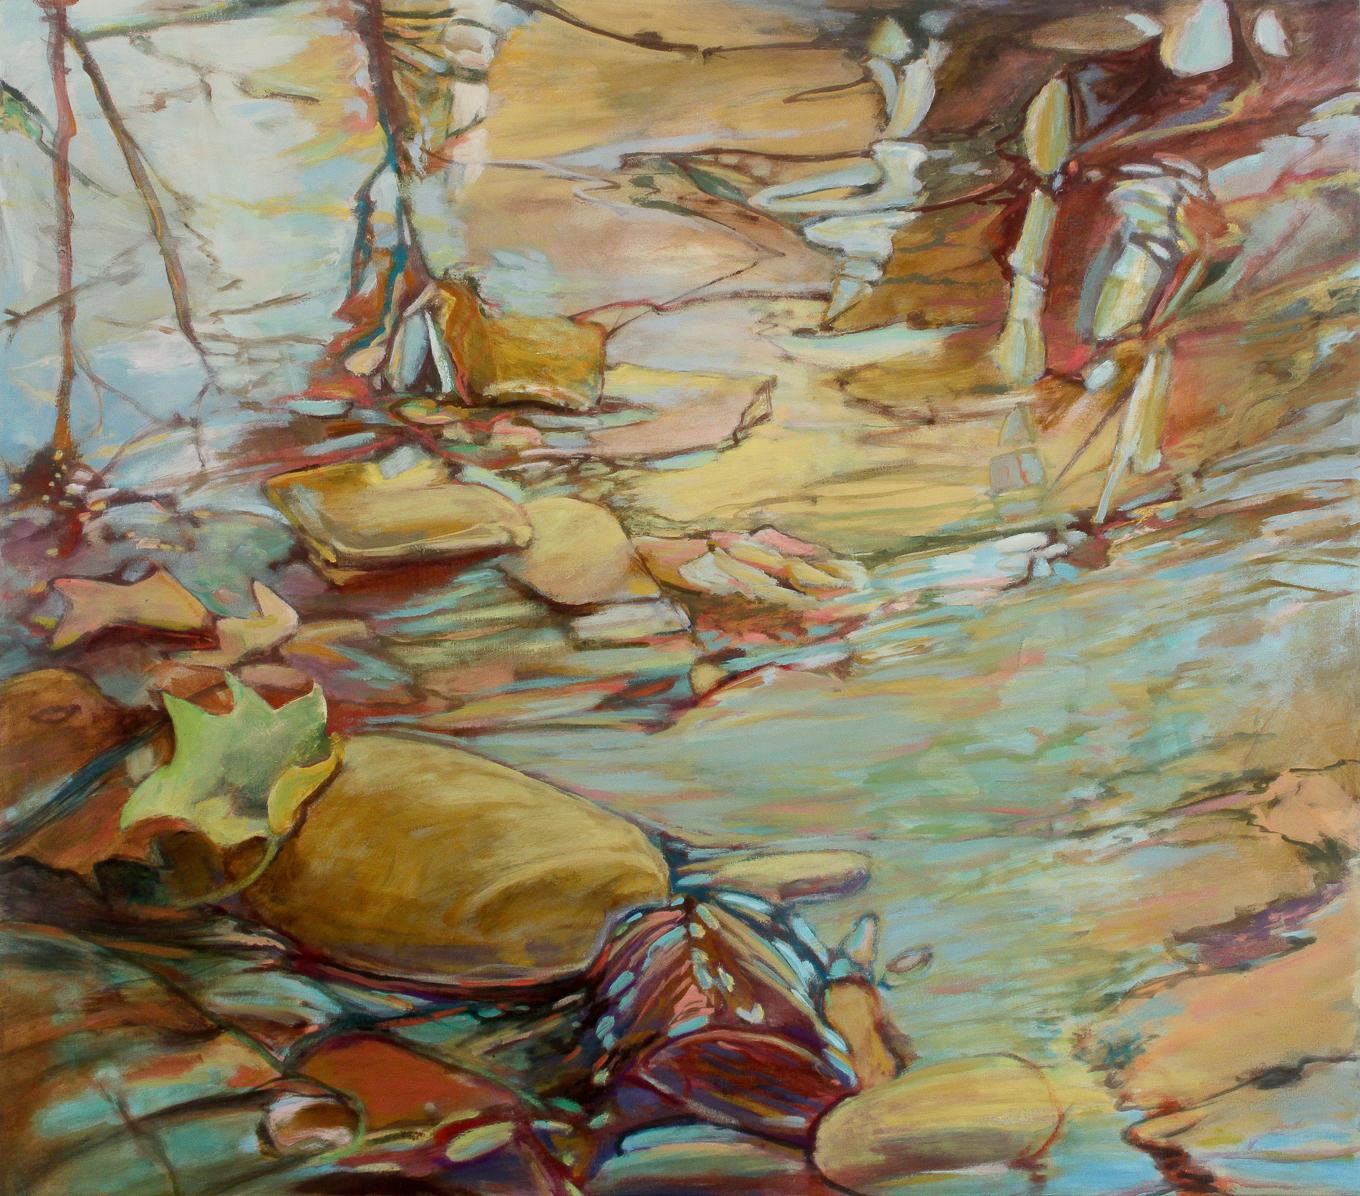 September

September  ist Teil von C.  Ellen Harts Reflexionsreihe.  Die Werke zeigen Spiegelungen auf der Oberfläche von Wasser und Glas.  Sie ist auf der Suche nach Bildern, die uns im Alltag umgeben, die wir aber selten wahrnehmen.  Diese Bilder